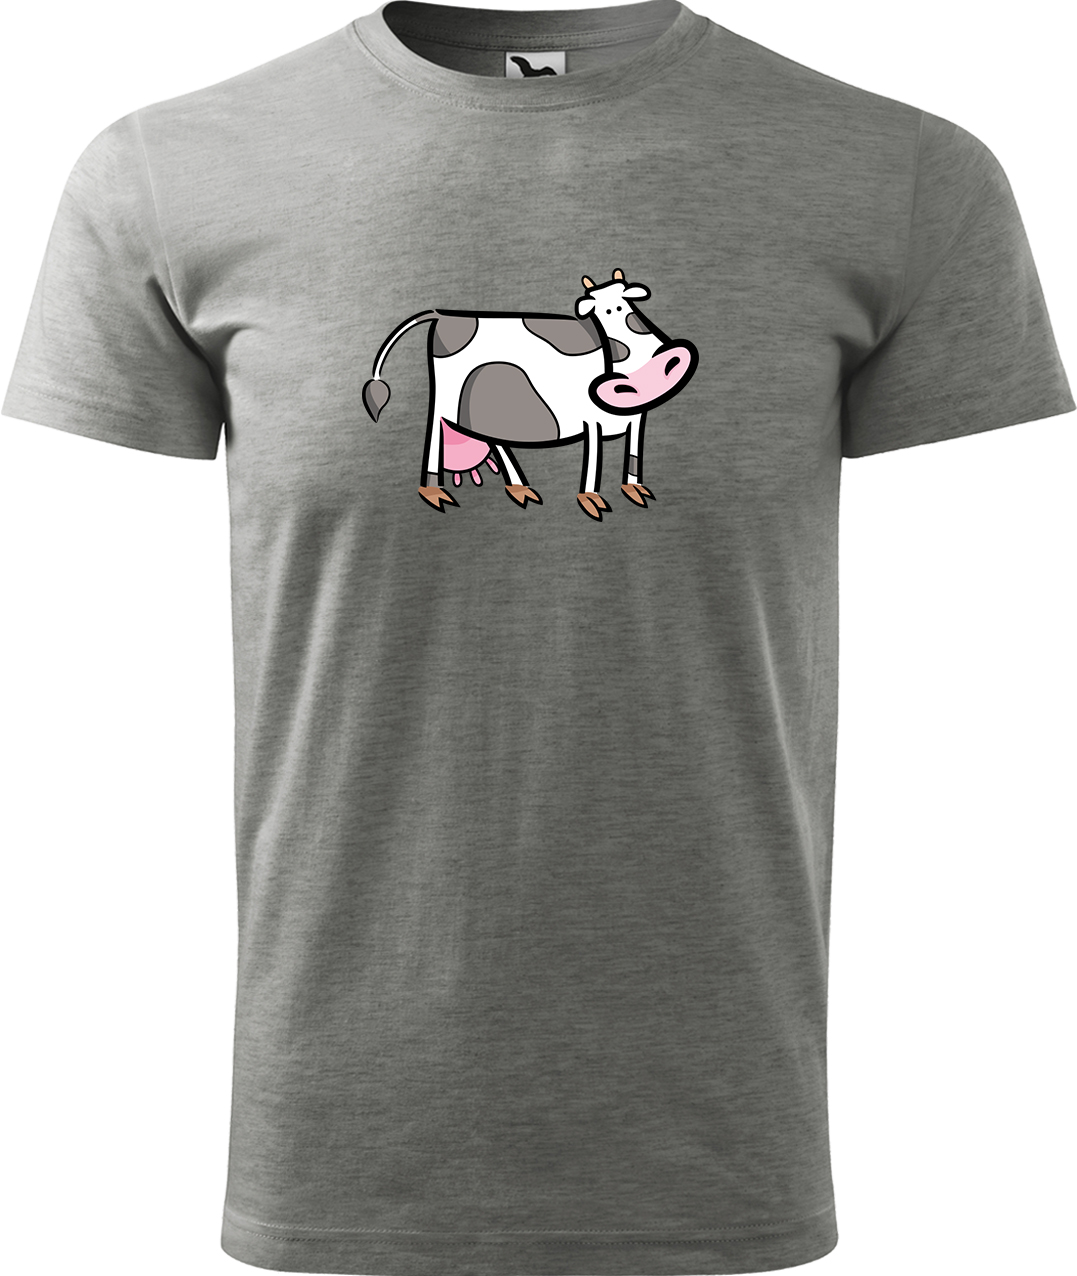 Pánské tričko s krávou - Kravička Velikost: S, Barva: Tmavě šedý melír (12), Střih: pánský